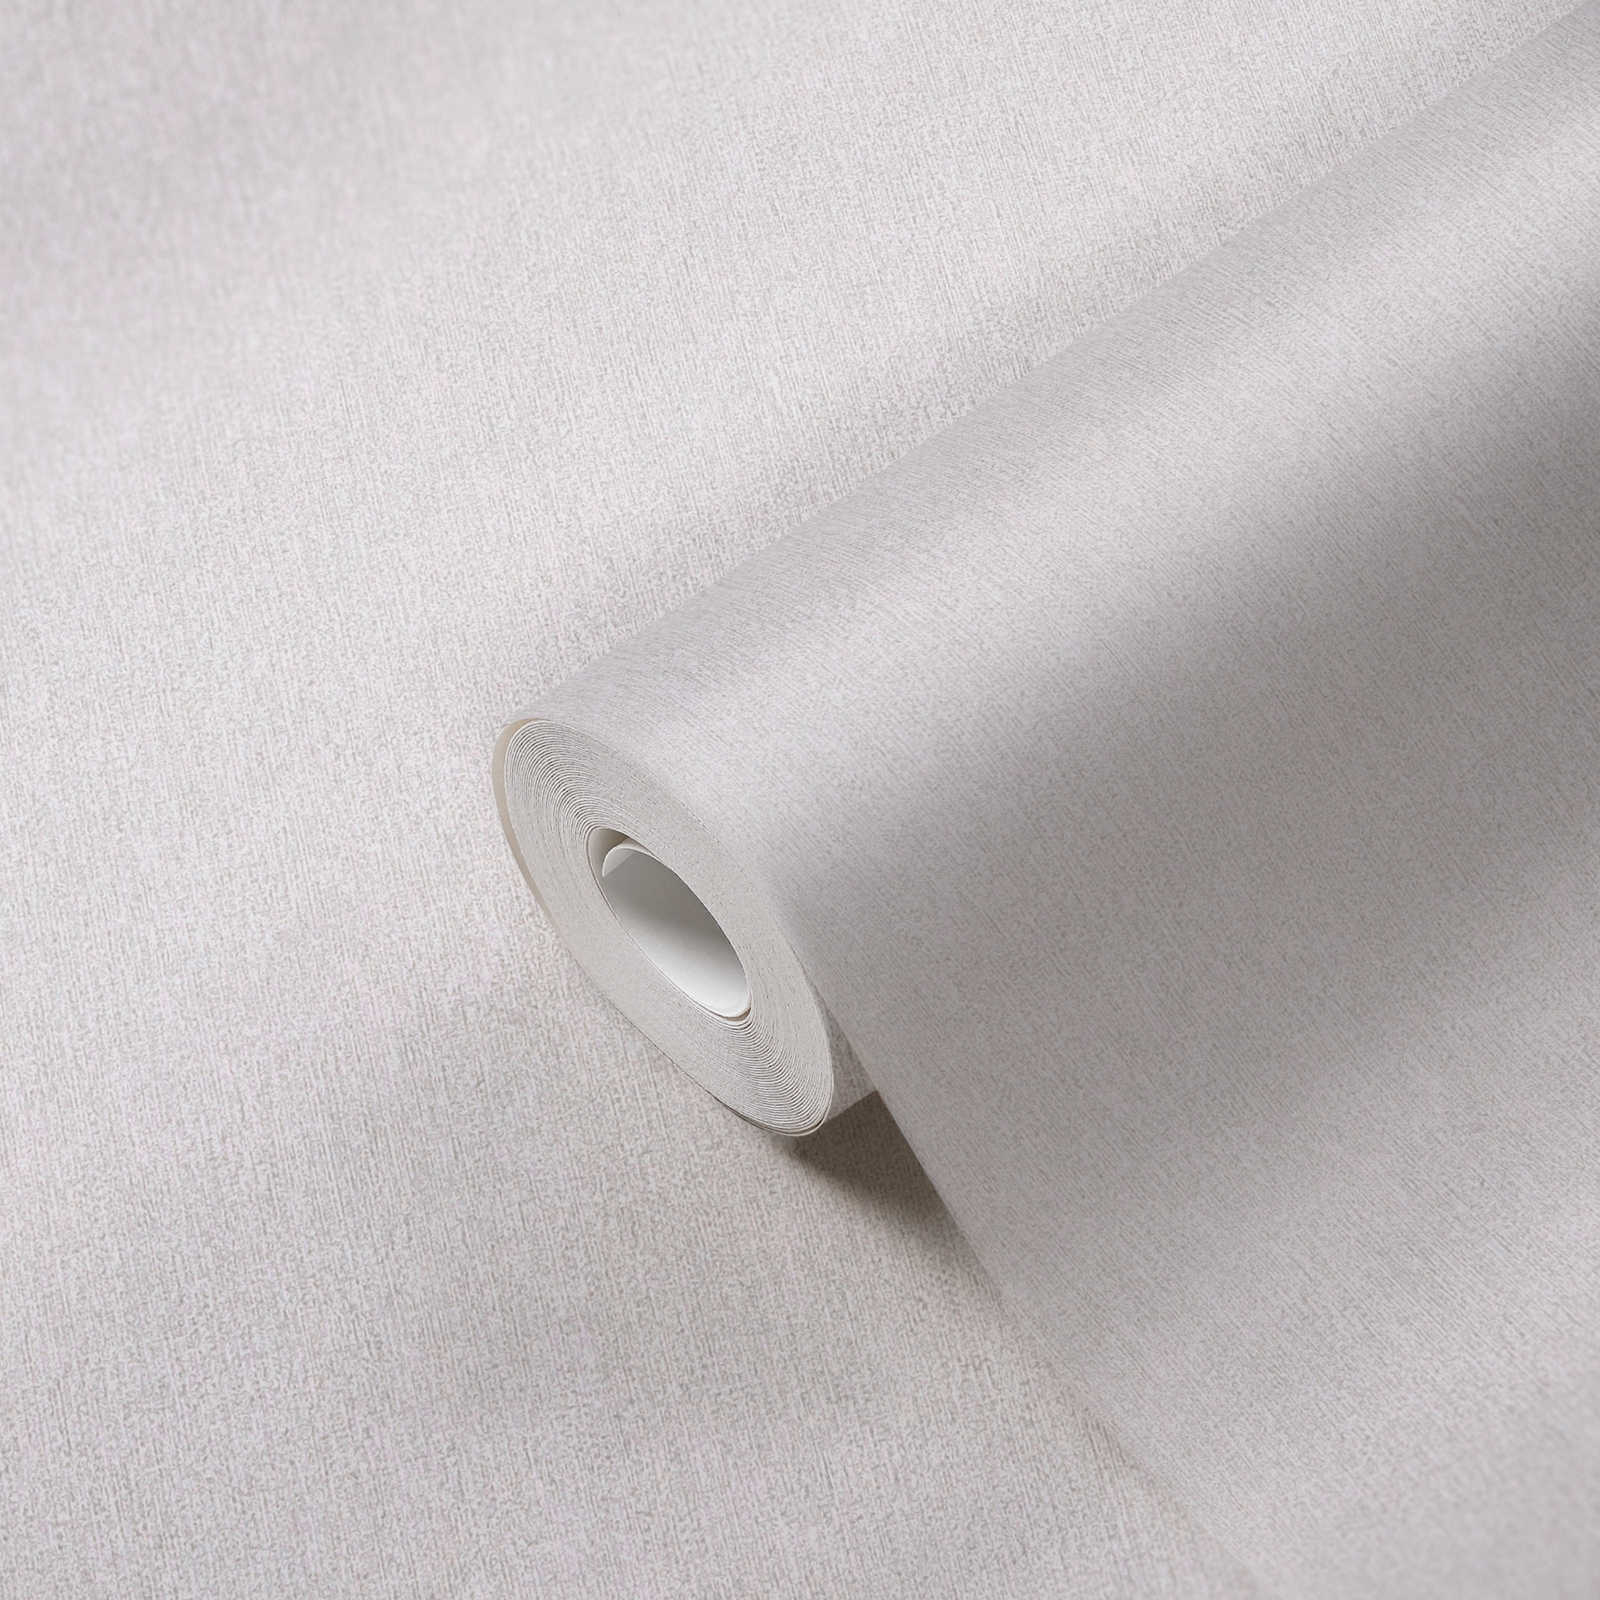             Papier peint intissé uni aspect structuré mat - gris, gris clair
        